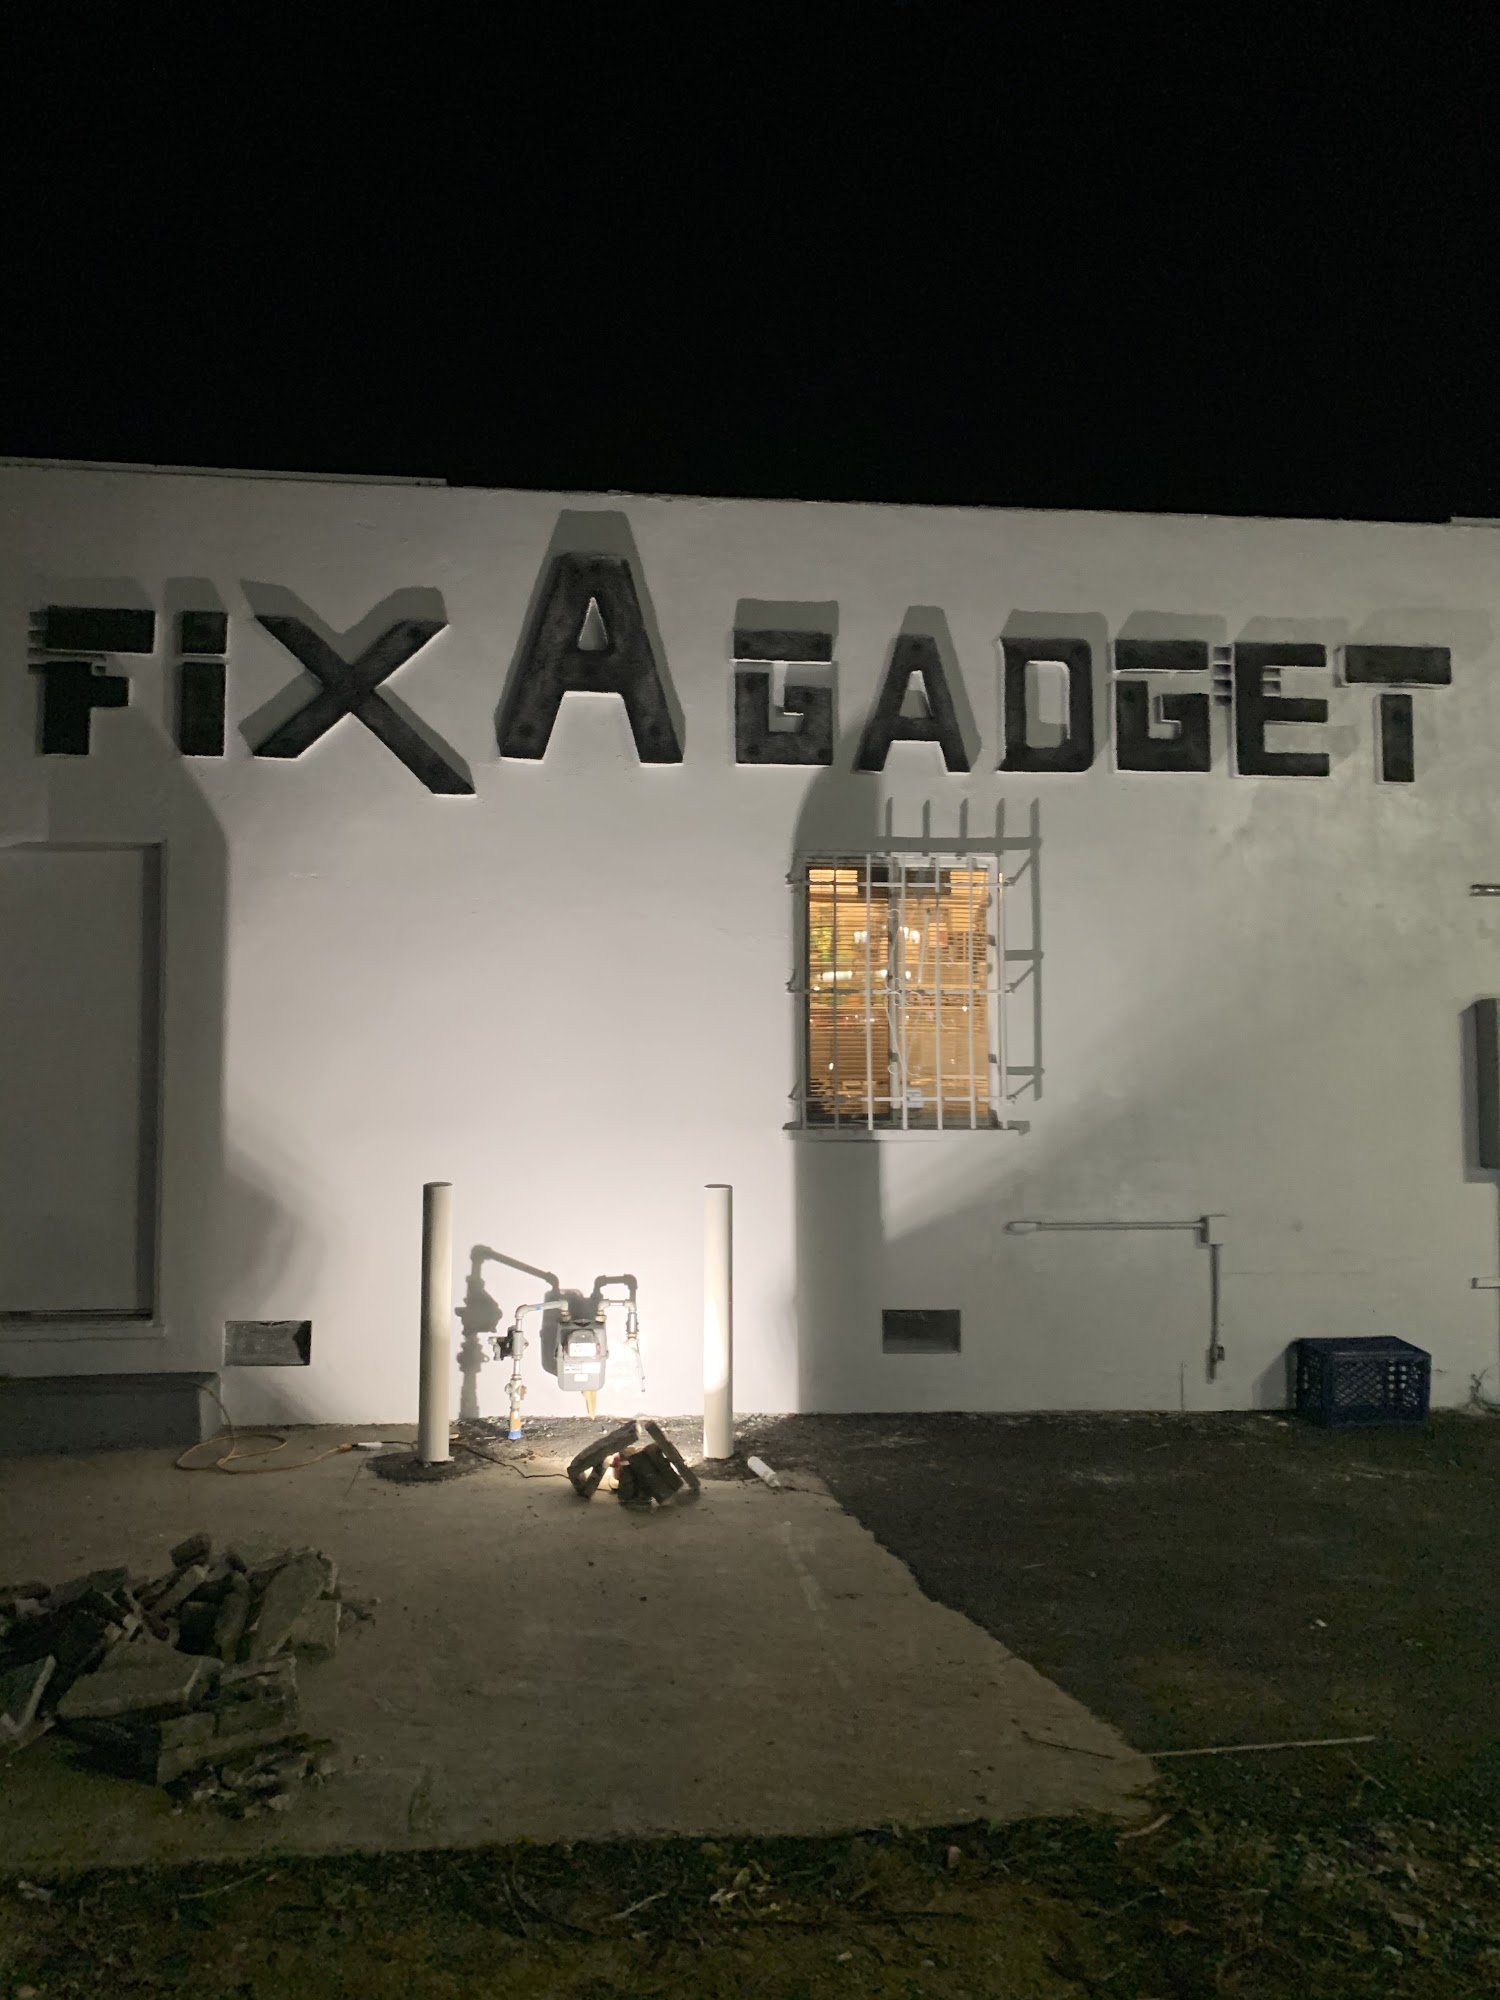 Fix A Gadget